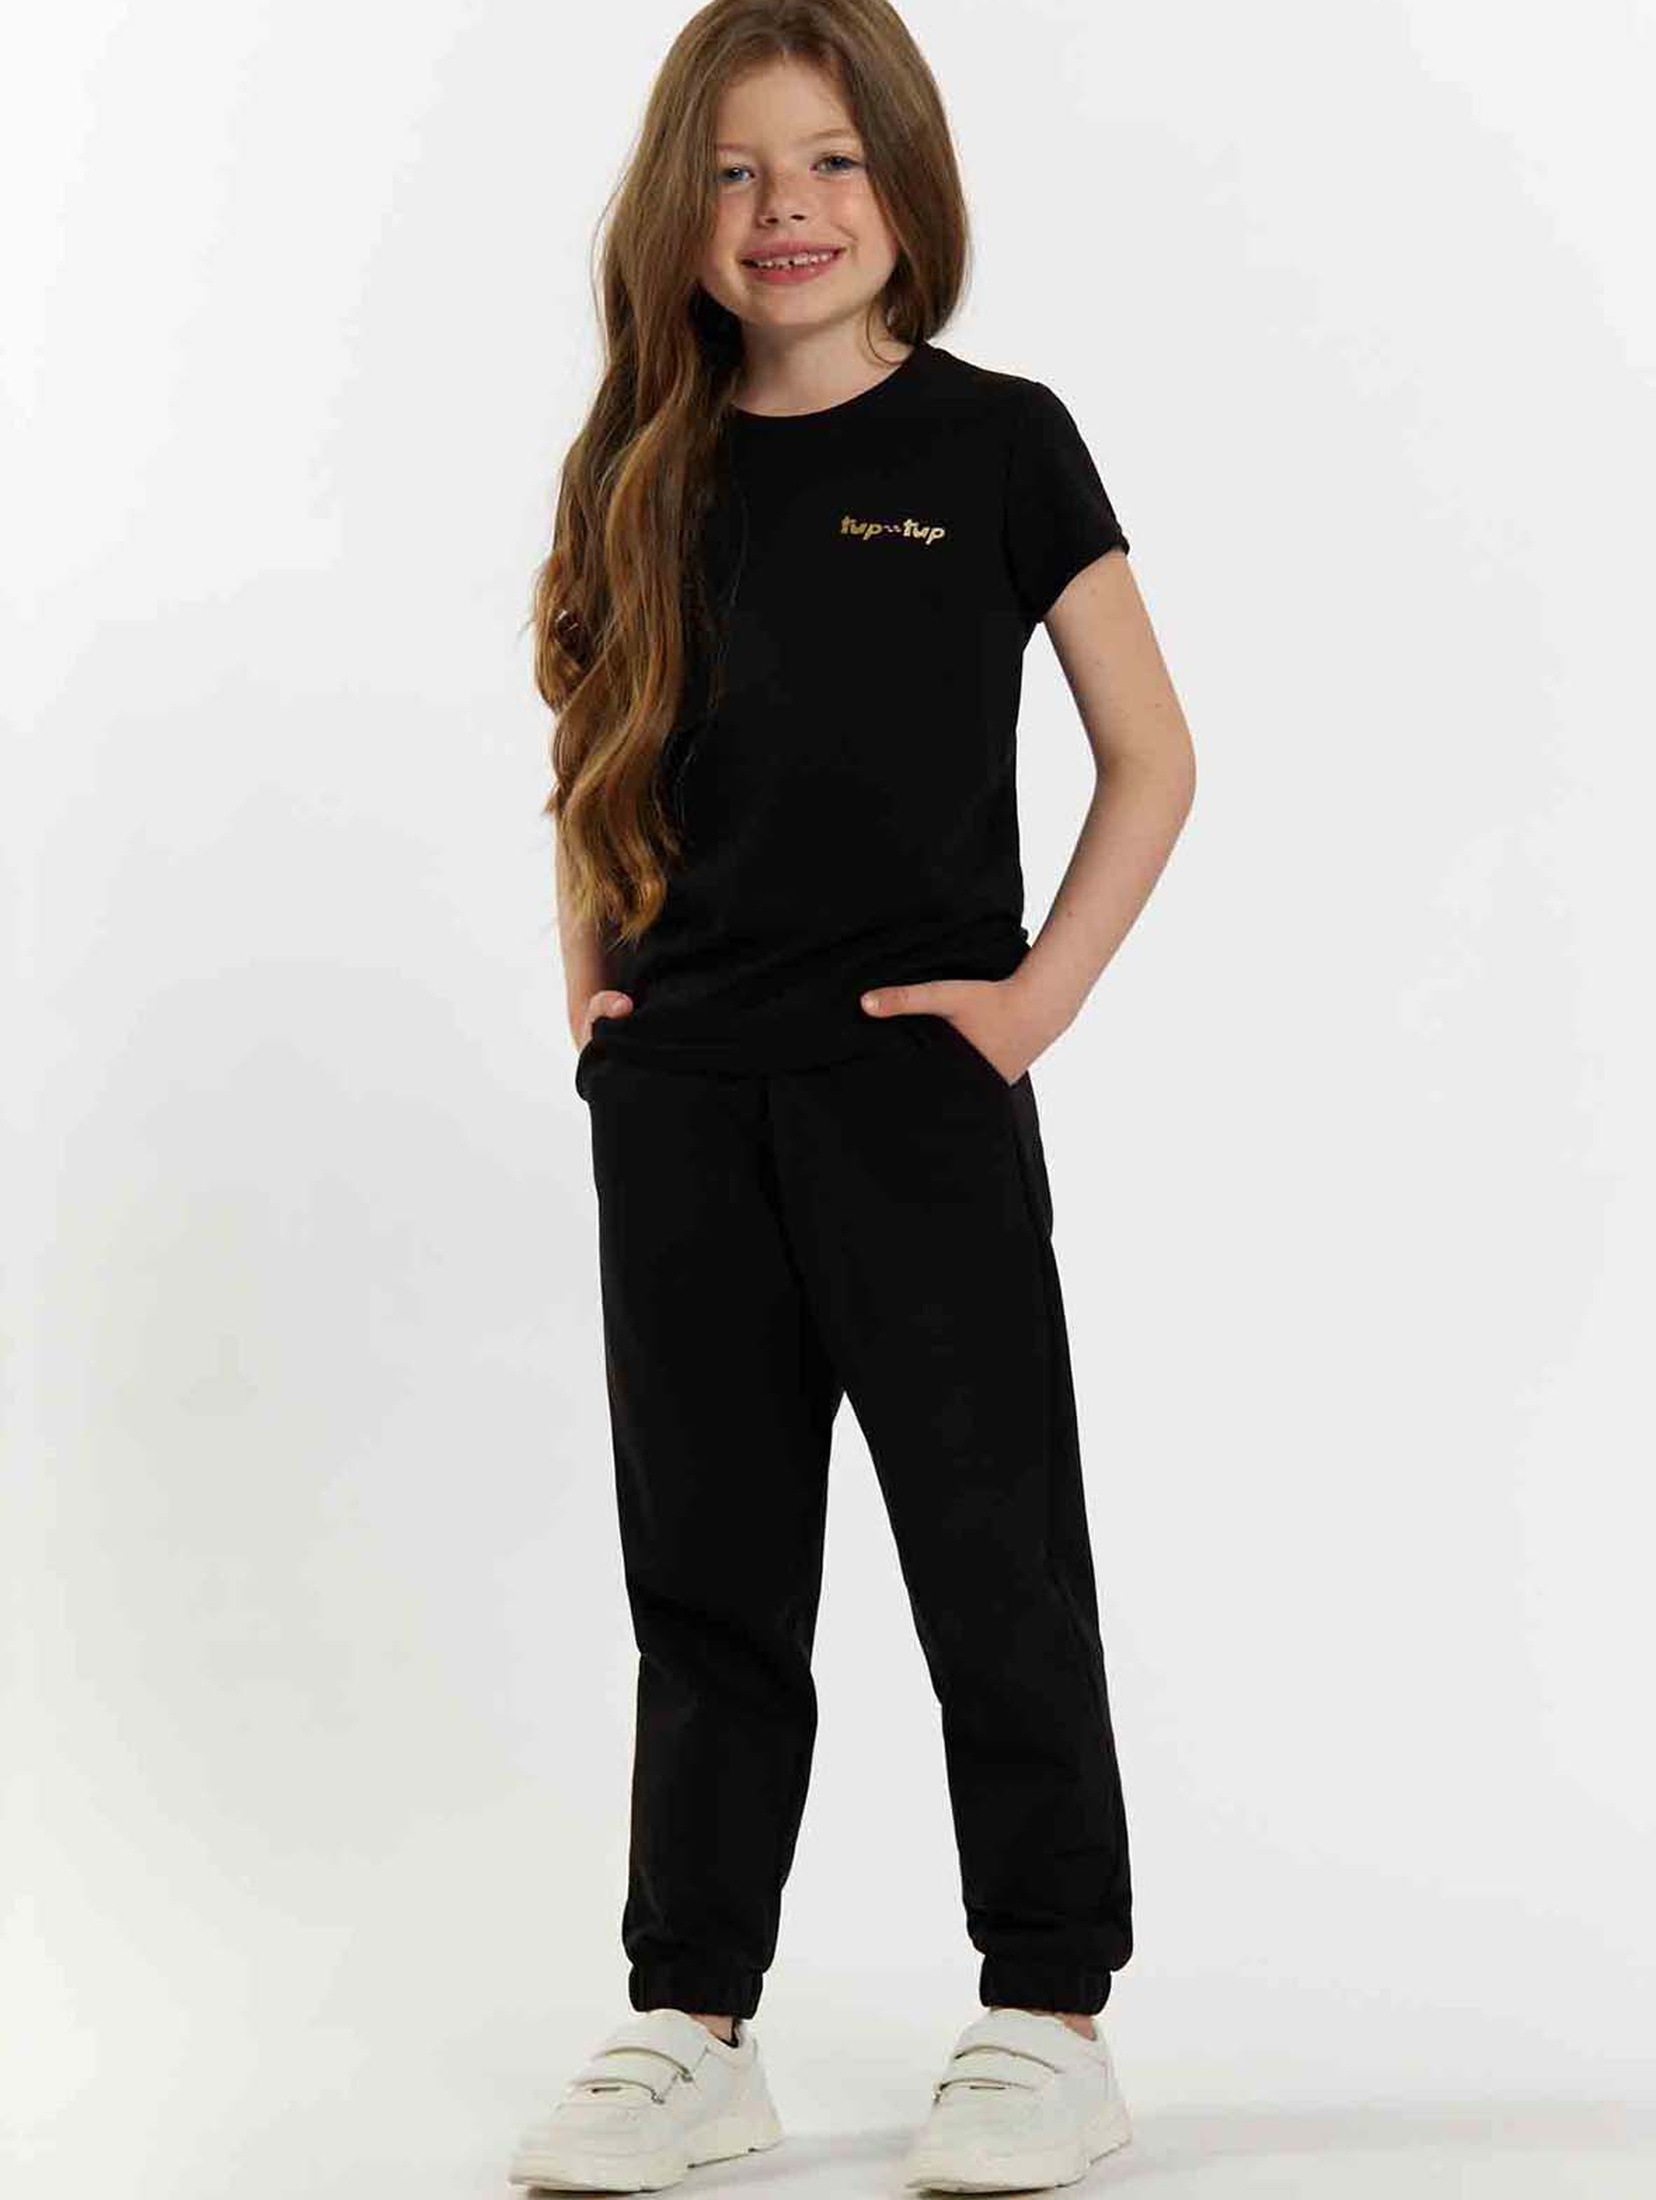 Czarny t-shirt dla dziewczynki z napisem Tup Tup